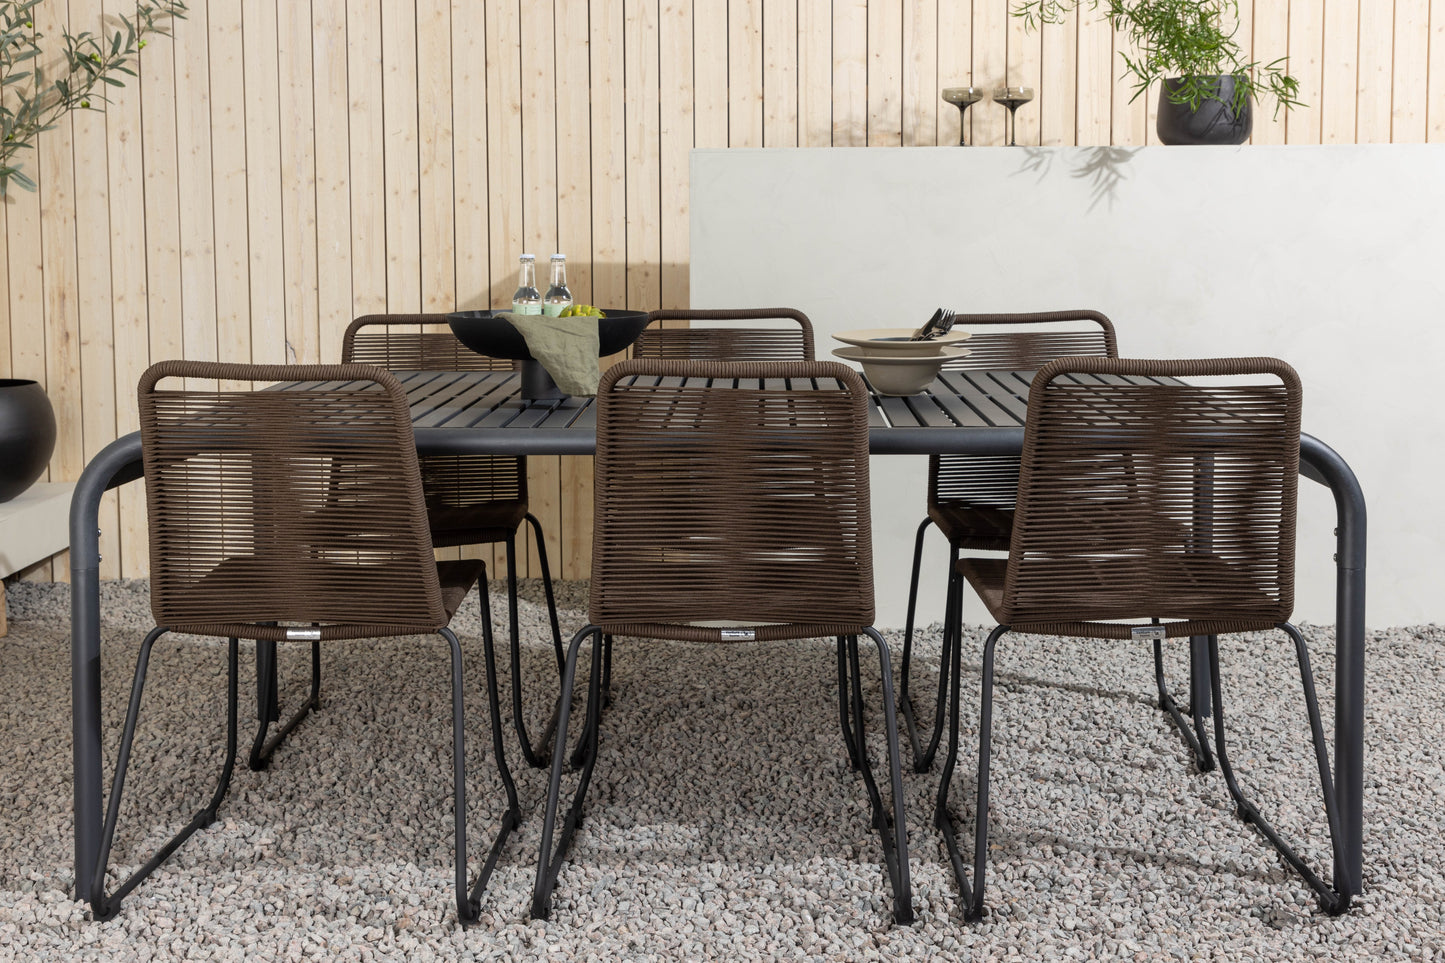 Borneo - Spisebord, Aluminium - Sort / Rektangulær 100*200* + Lidos stol Aluminium - Sort